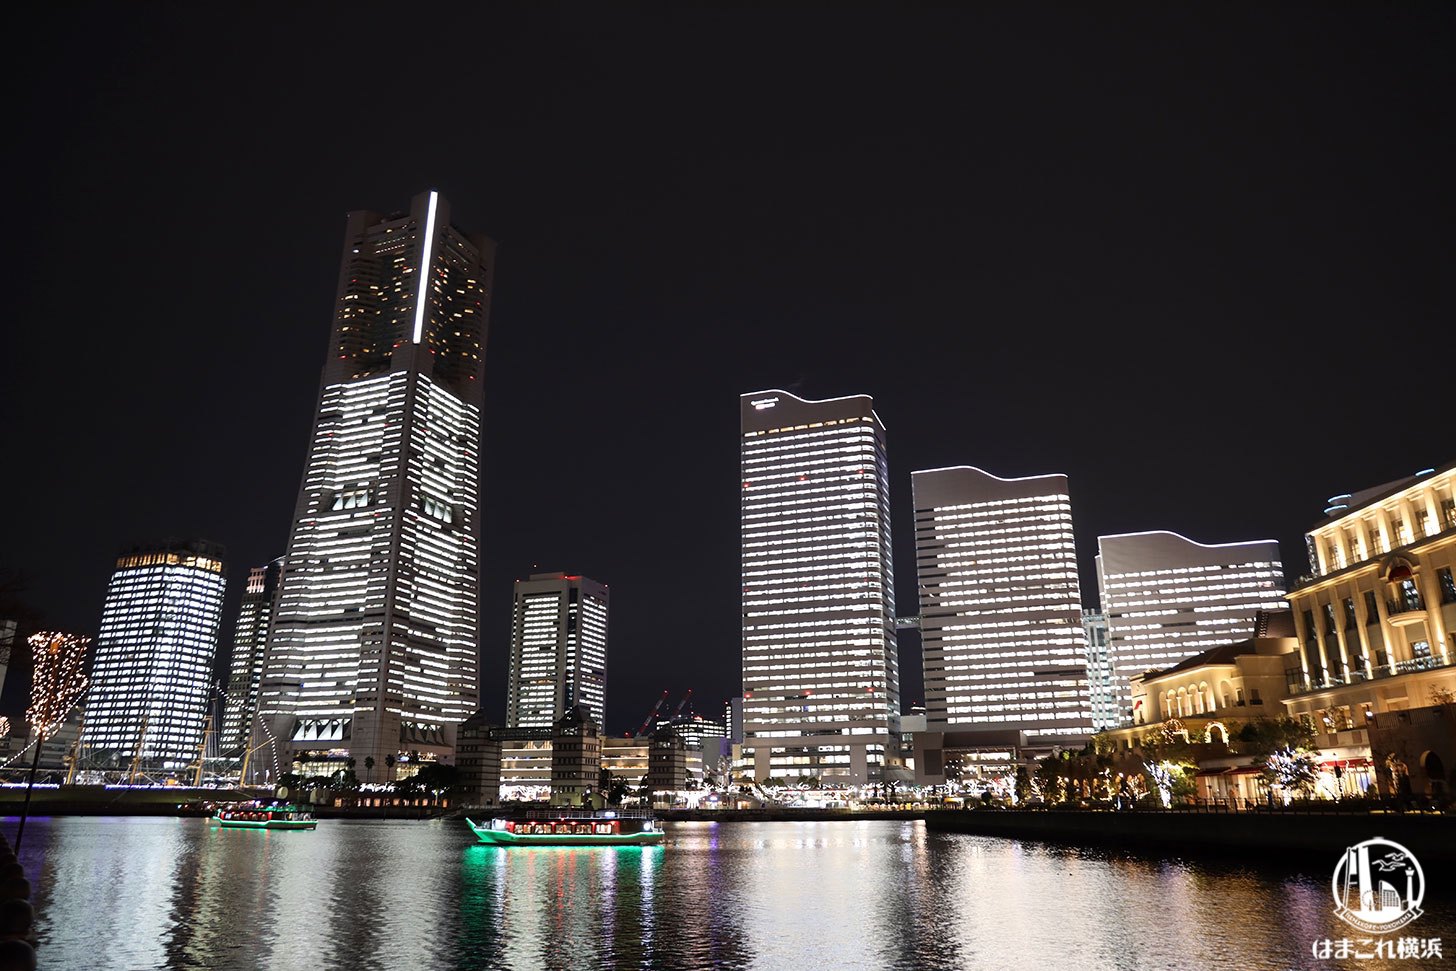 タワーズミライト2021（全館点灯）12月24日開催！横浜みなとみらい一夜限りのライトアップ